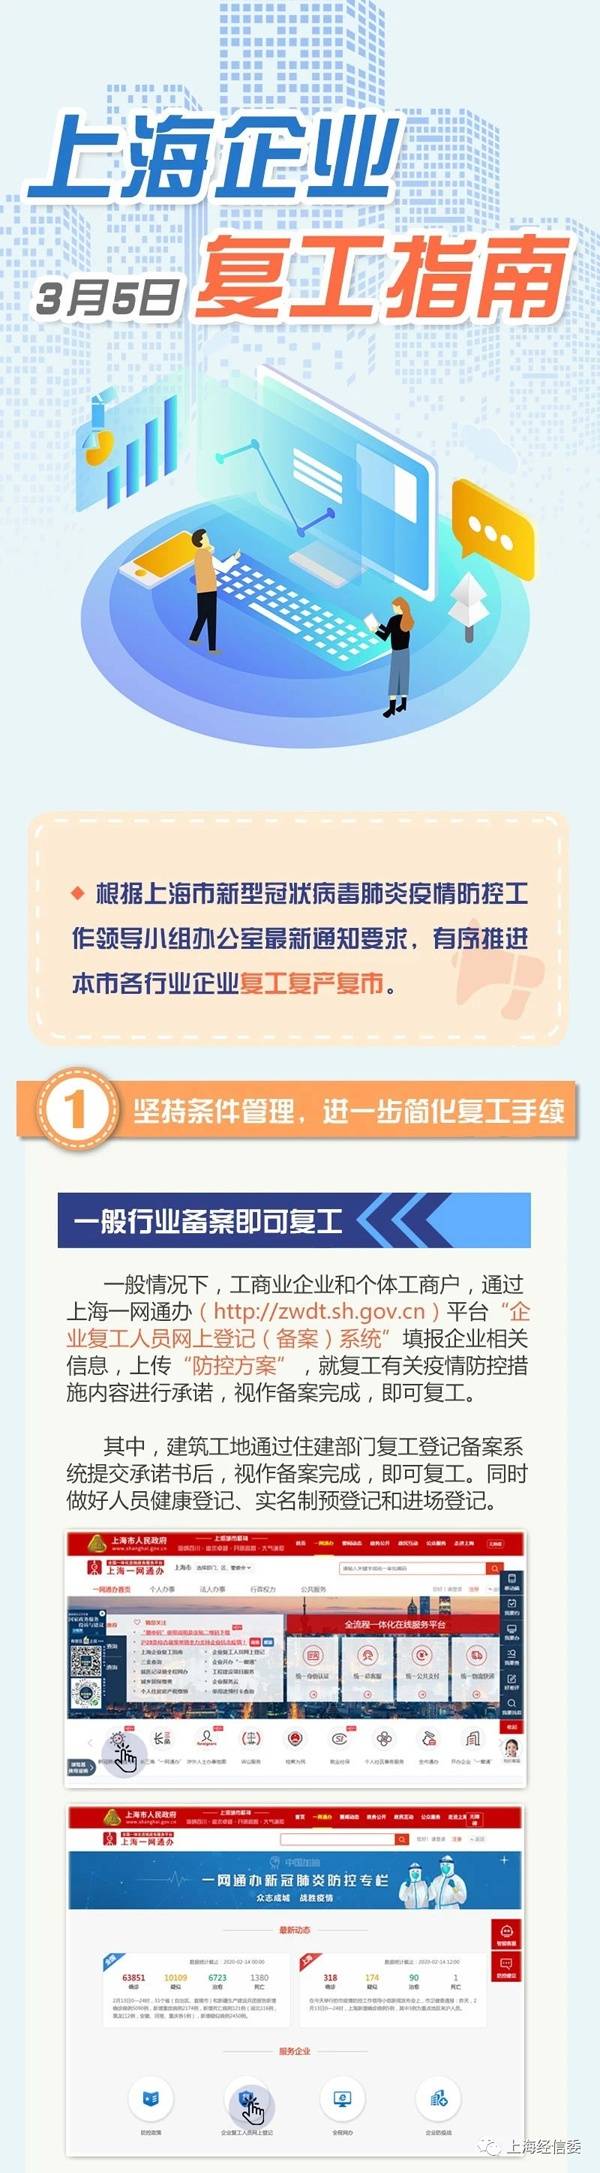 上海企业复工指南再次更新 一般行业备案即可复工